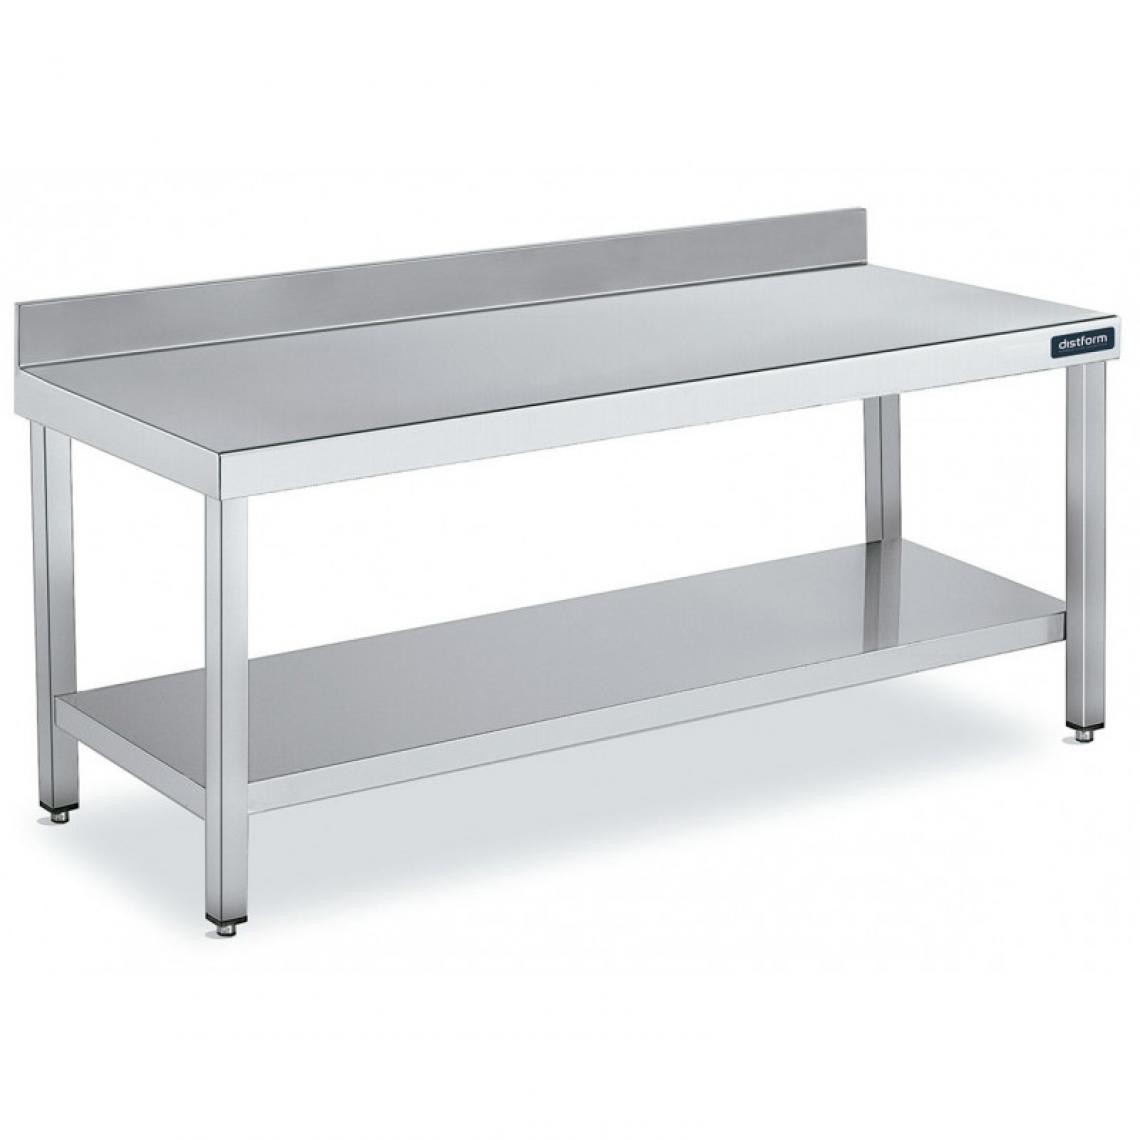 DISTFORM - Table Adossée en Inox avec 1 étagère Profondeur 700 mm - Distform - Acier inoxydable800x700 - Tables à manger